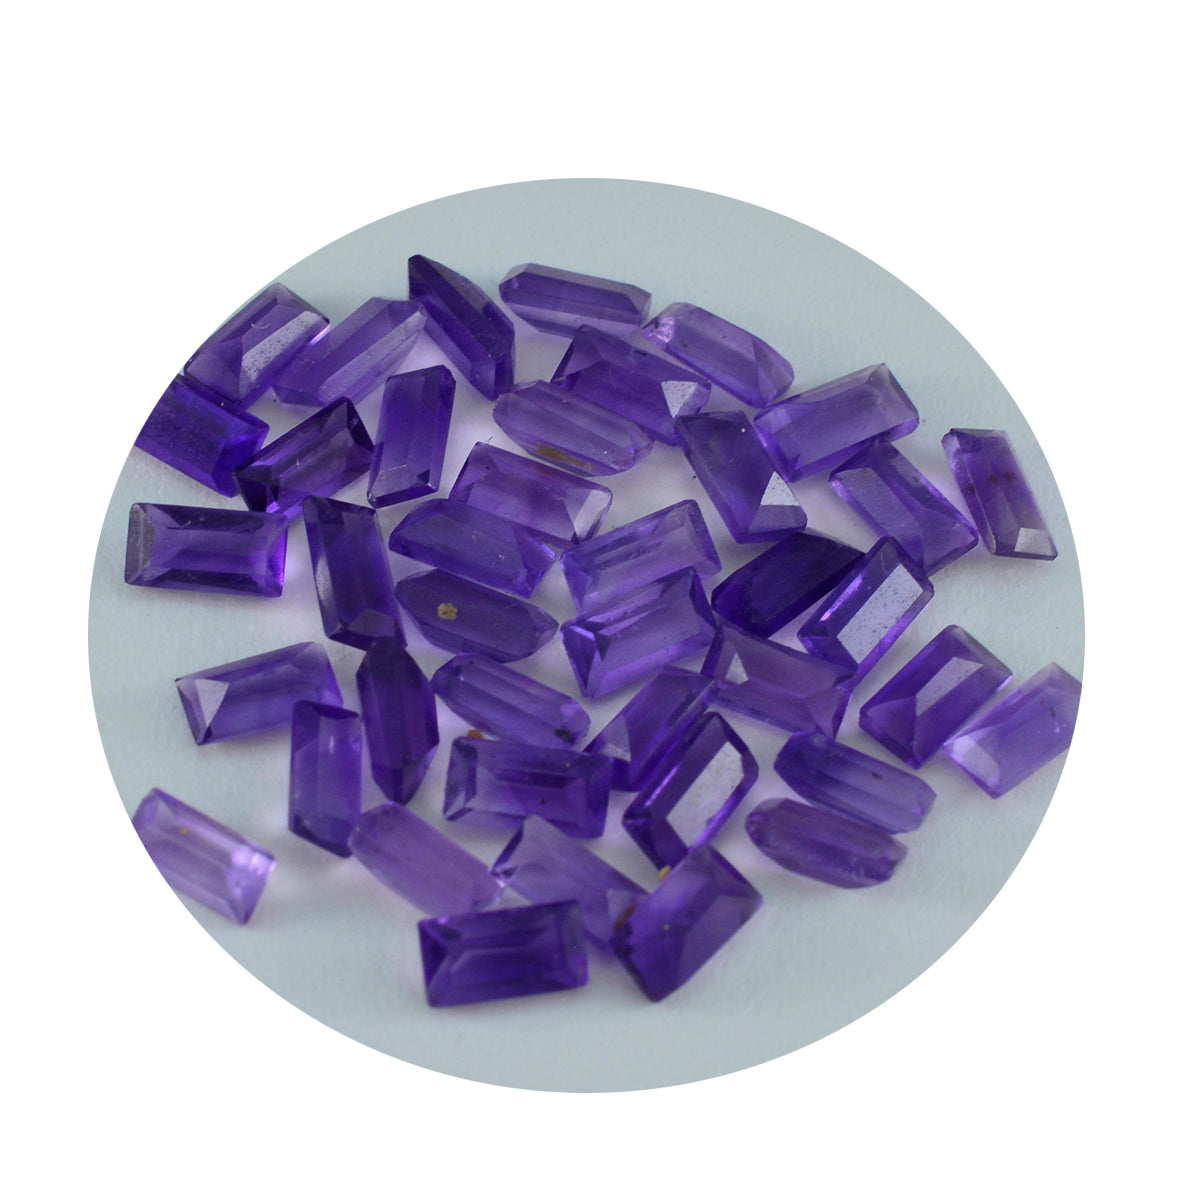 Riyogems 1PC Genuine Purple Amethyst Faceted 4x8 mm Baguette Shape nice-looking Quality Loose Gemstone